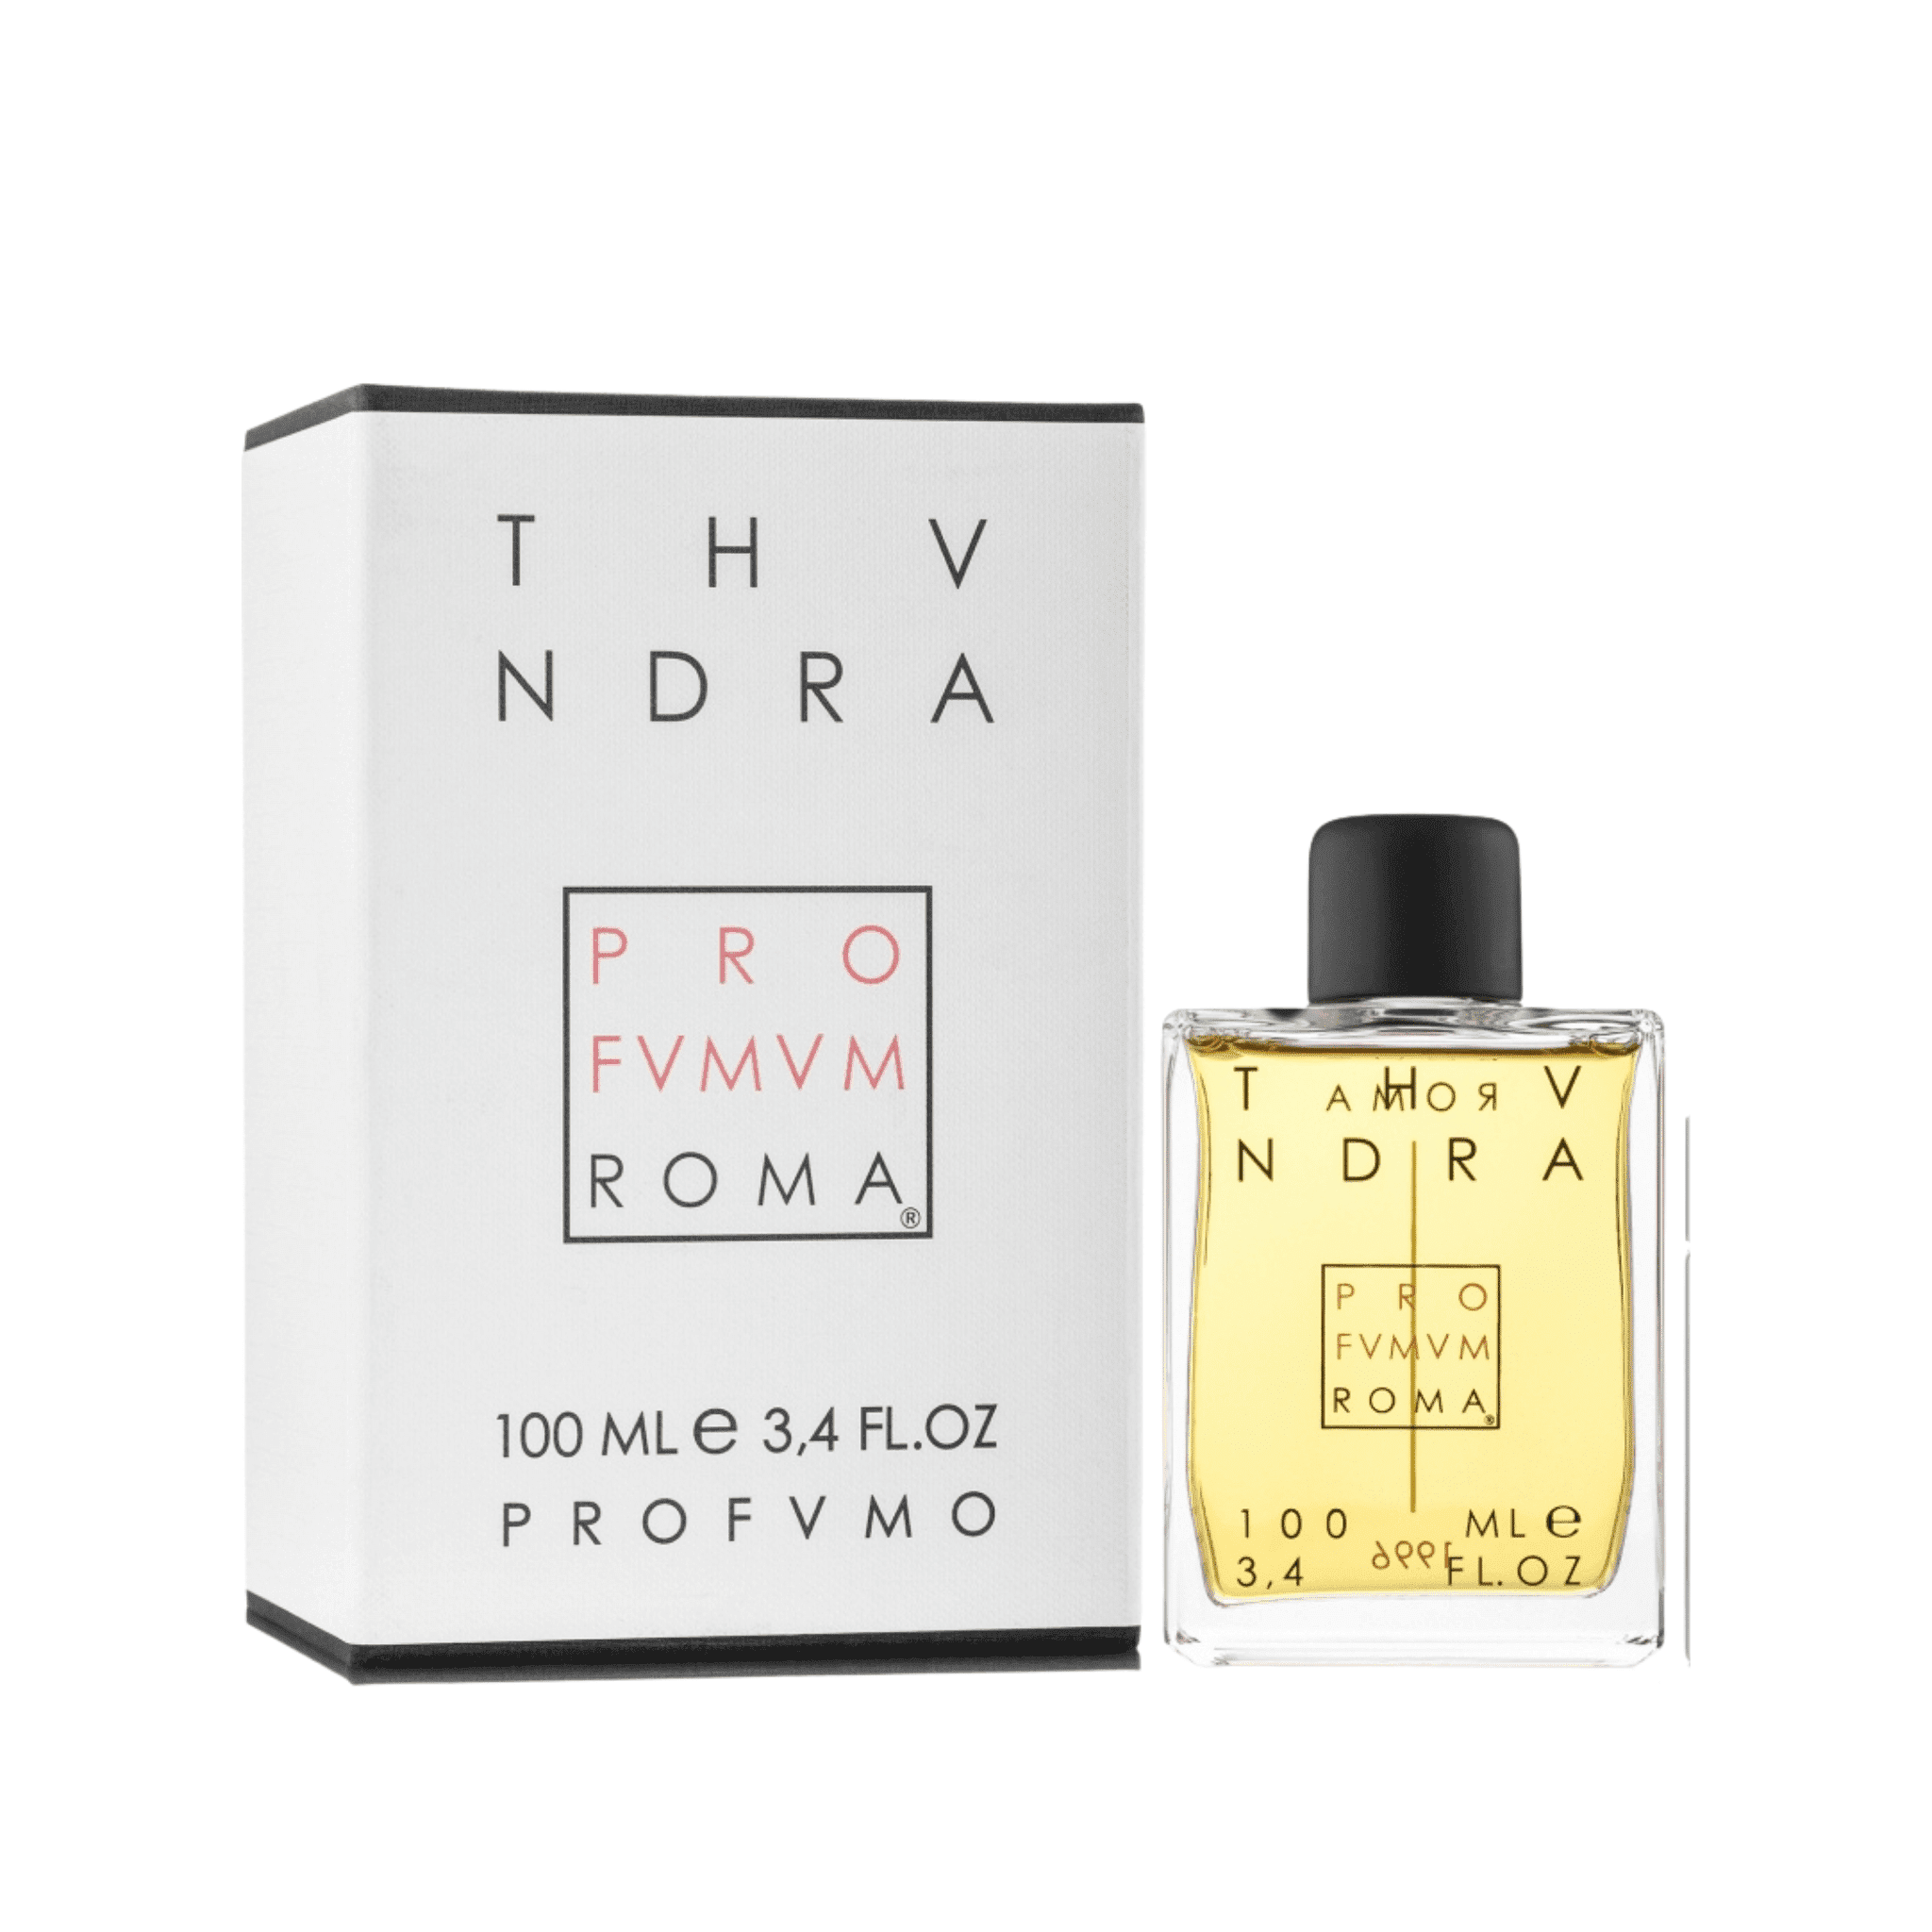 Tundra perfume